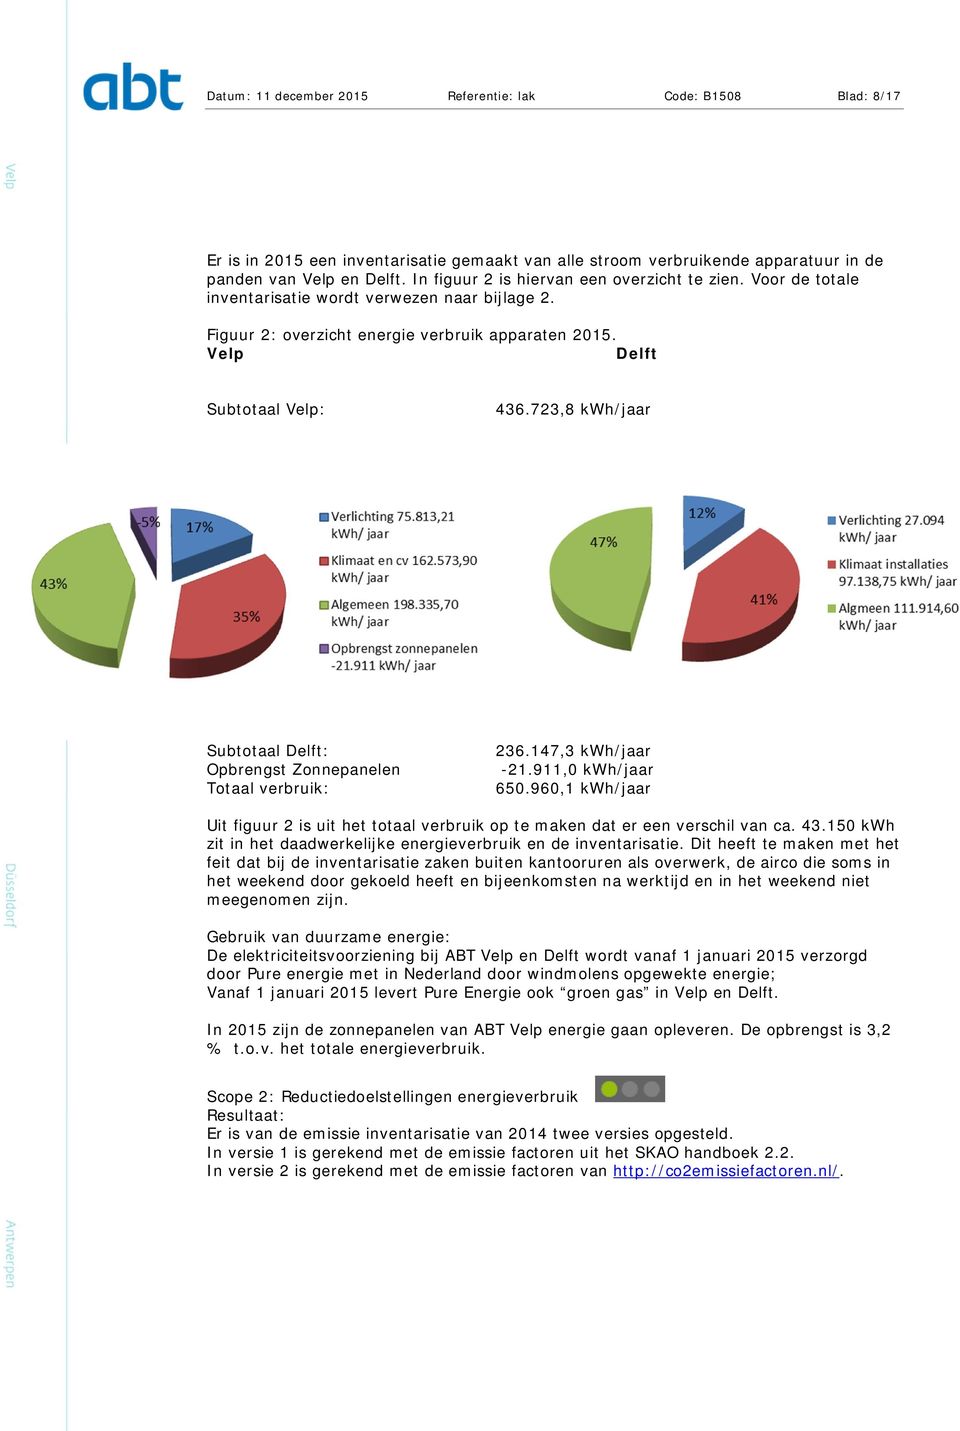 723,8 kwh/jaar Subtotaal Delft: 236.147,3 kwh/jaar Opbrengst Zonnepanelen -21.911,0 kwh/jaar Totaal verbruik: 650.